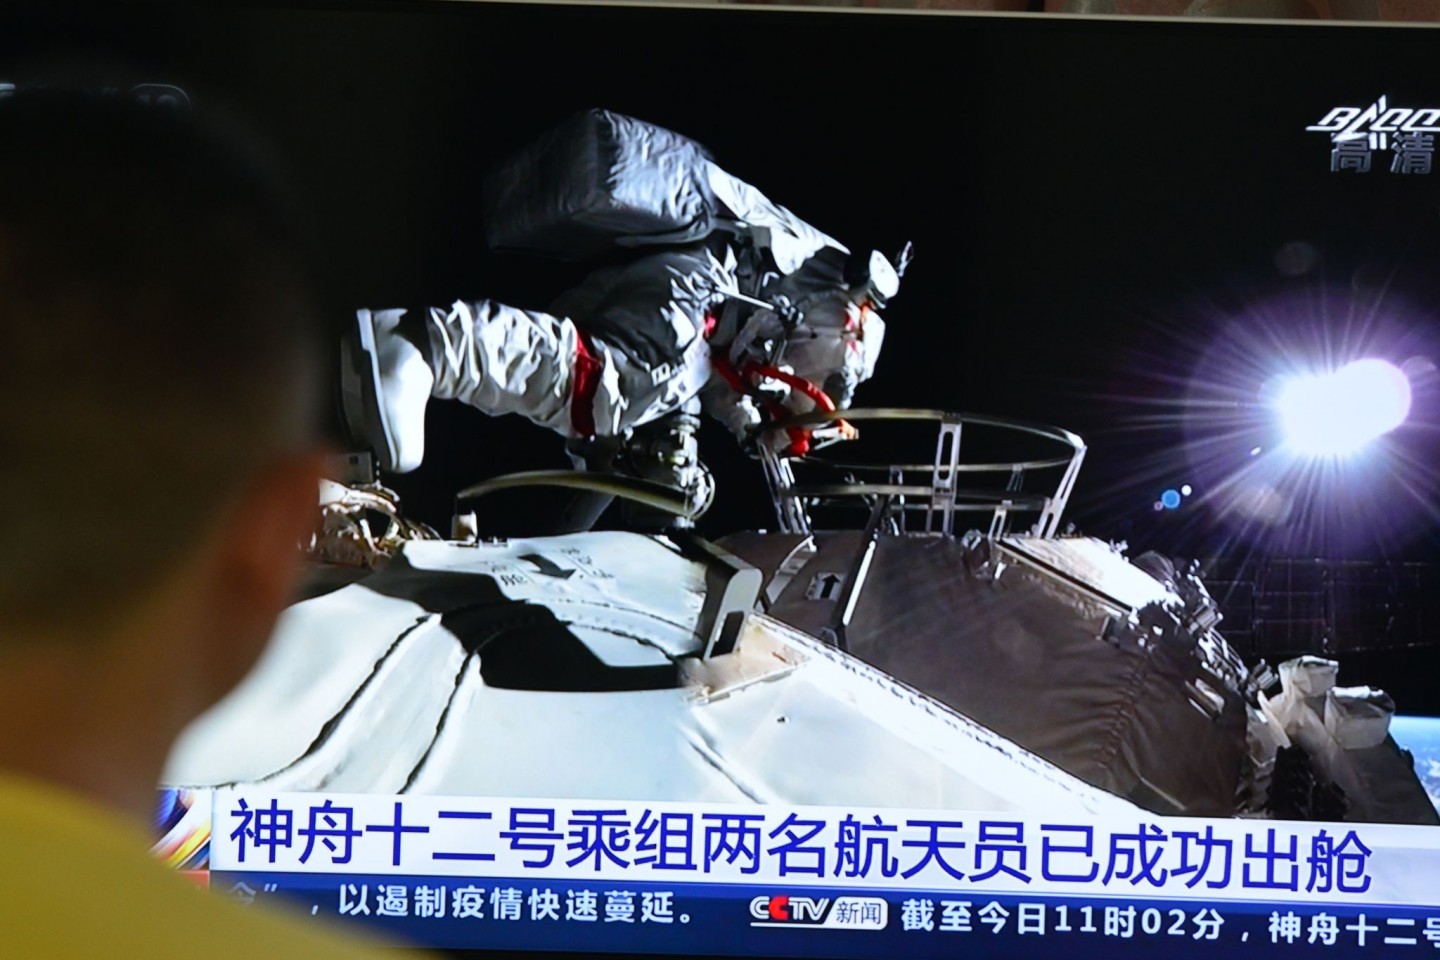 Fernsehbild der Live-Übertragung des Weltraumspaziergangs der beiden chinesischen Astronauten.